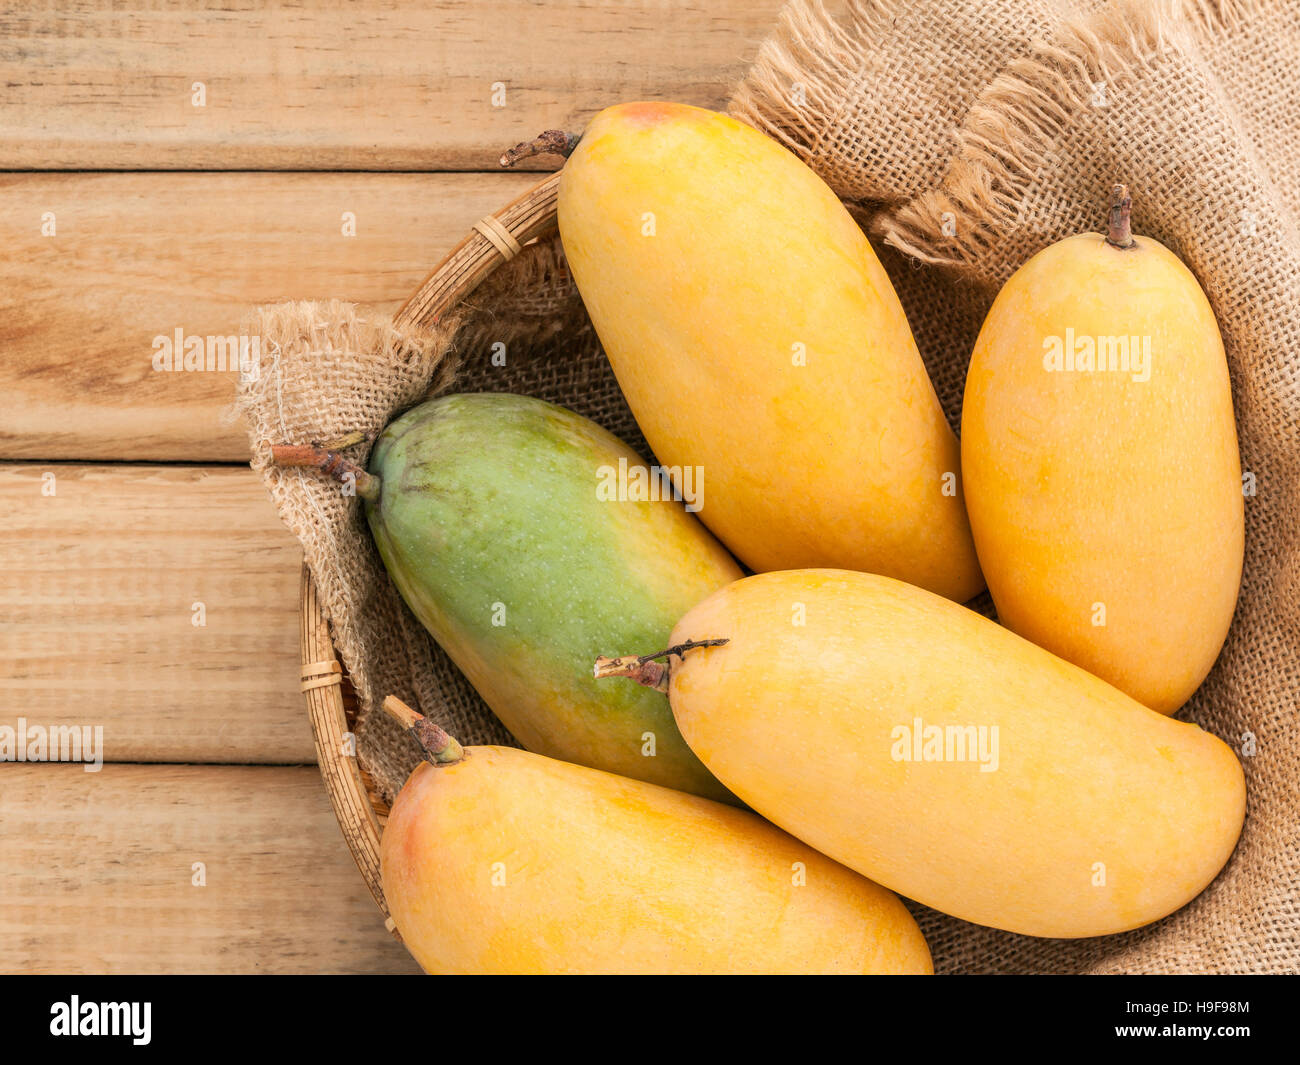 Fresche biologiche tailandese tradizionale manghi ricco di vitamine e di minerali Foto Stock